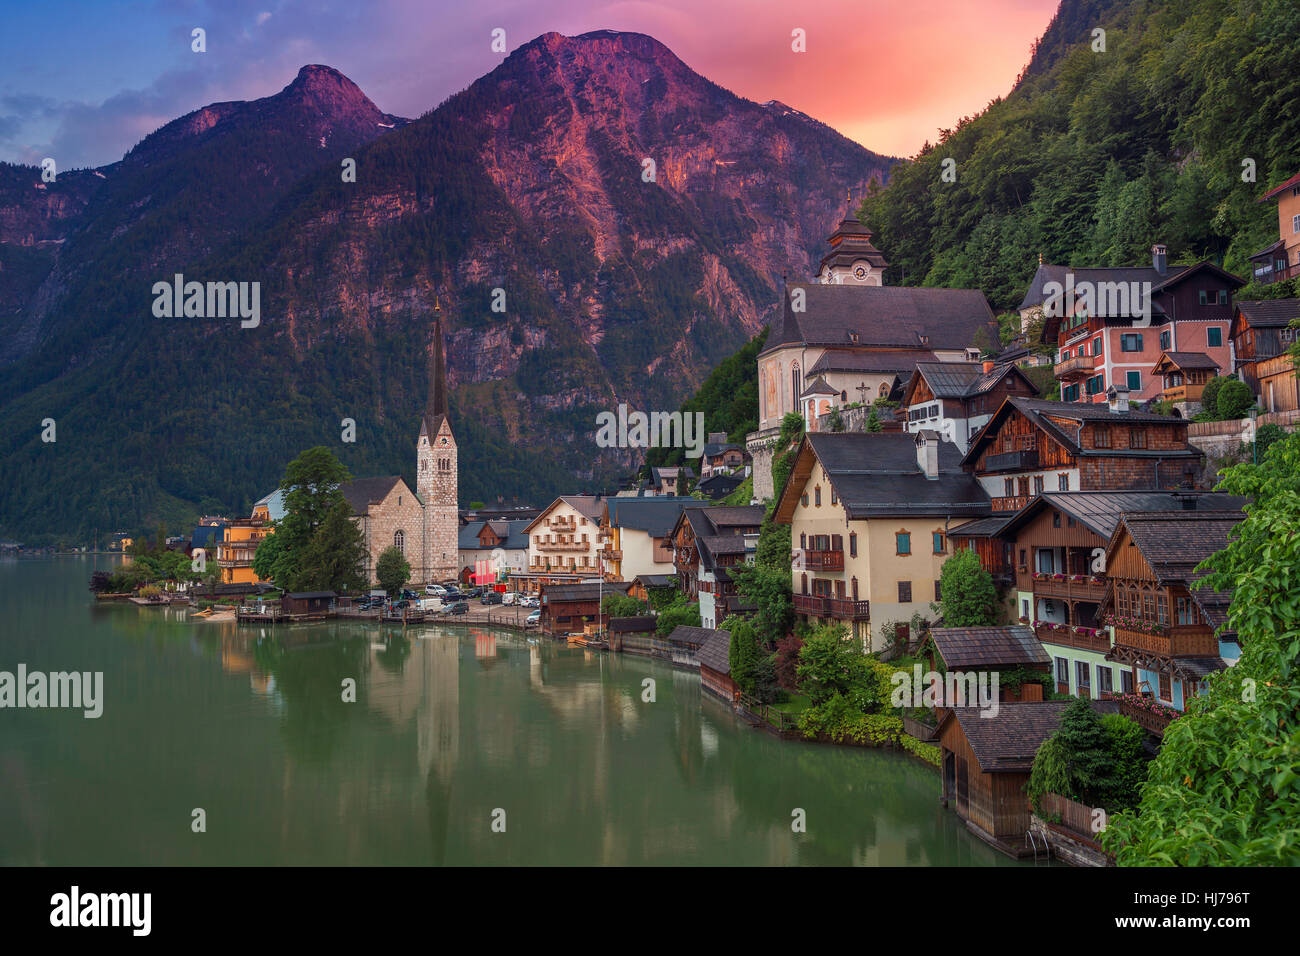 Halstatt, Autriche. Image du célèbre village alpin Halstatt pendant été haut en couleurs du coucher du soleil. Banque D'Images